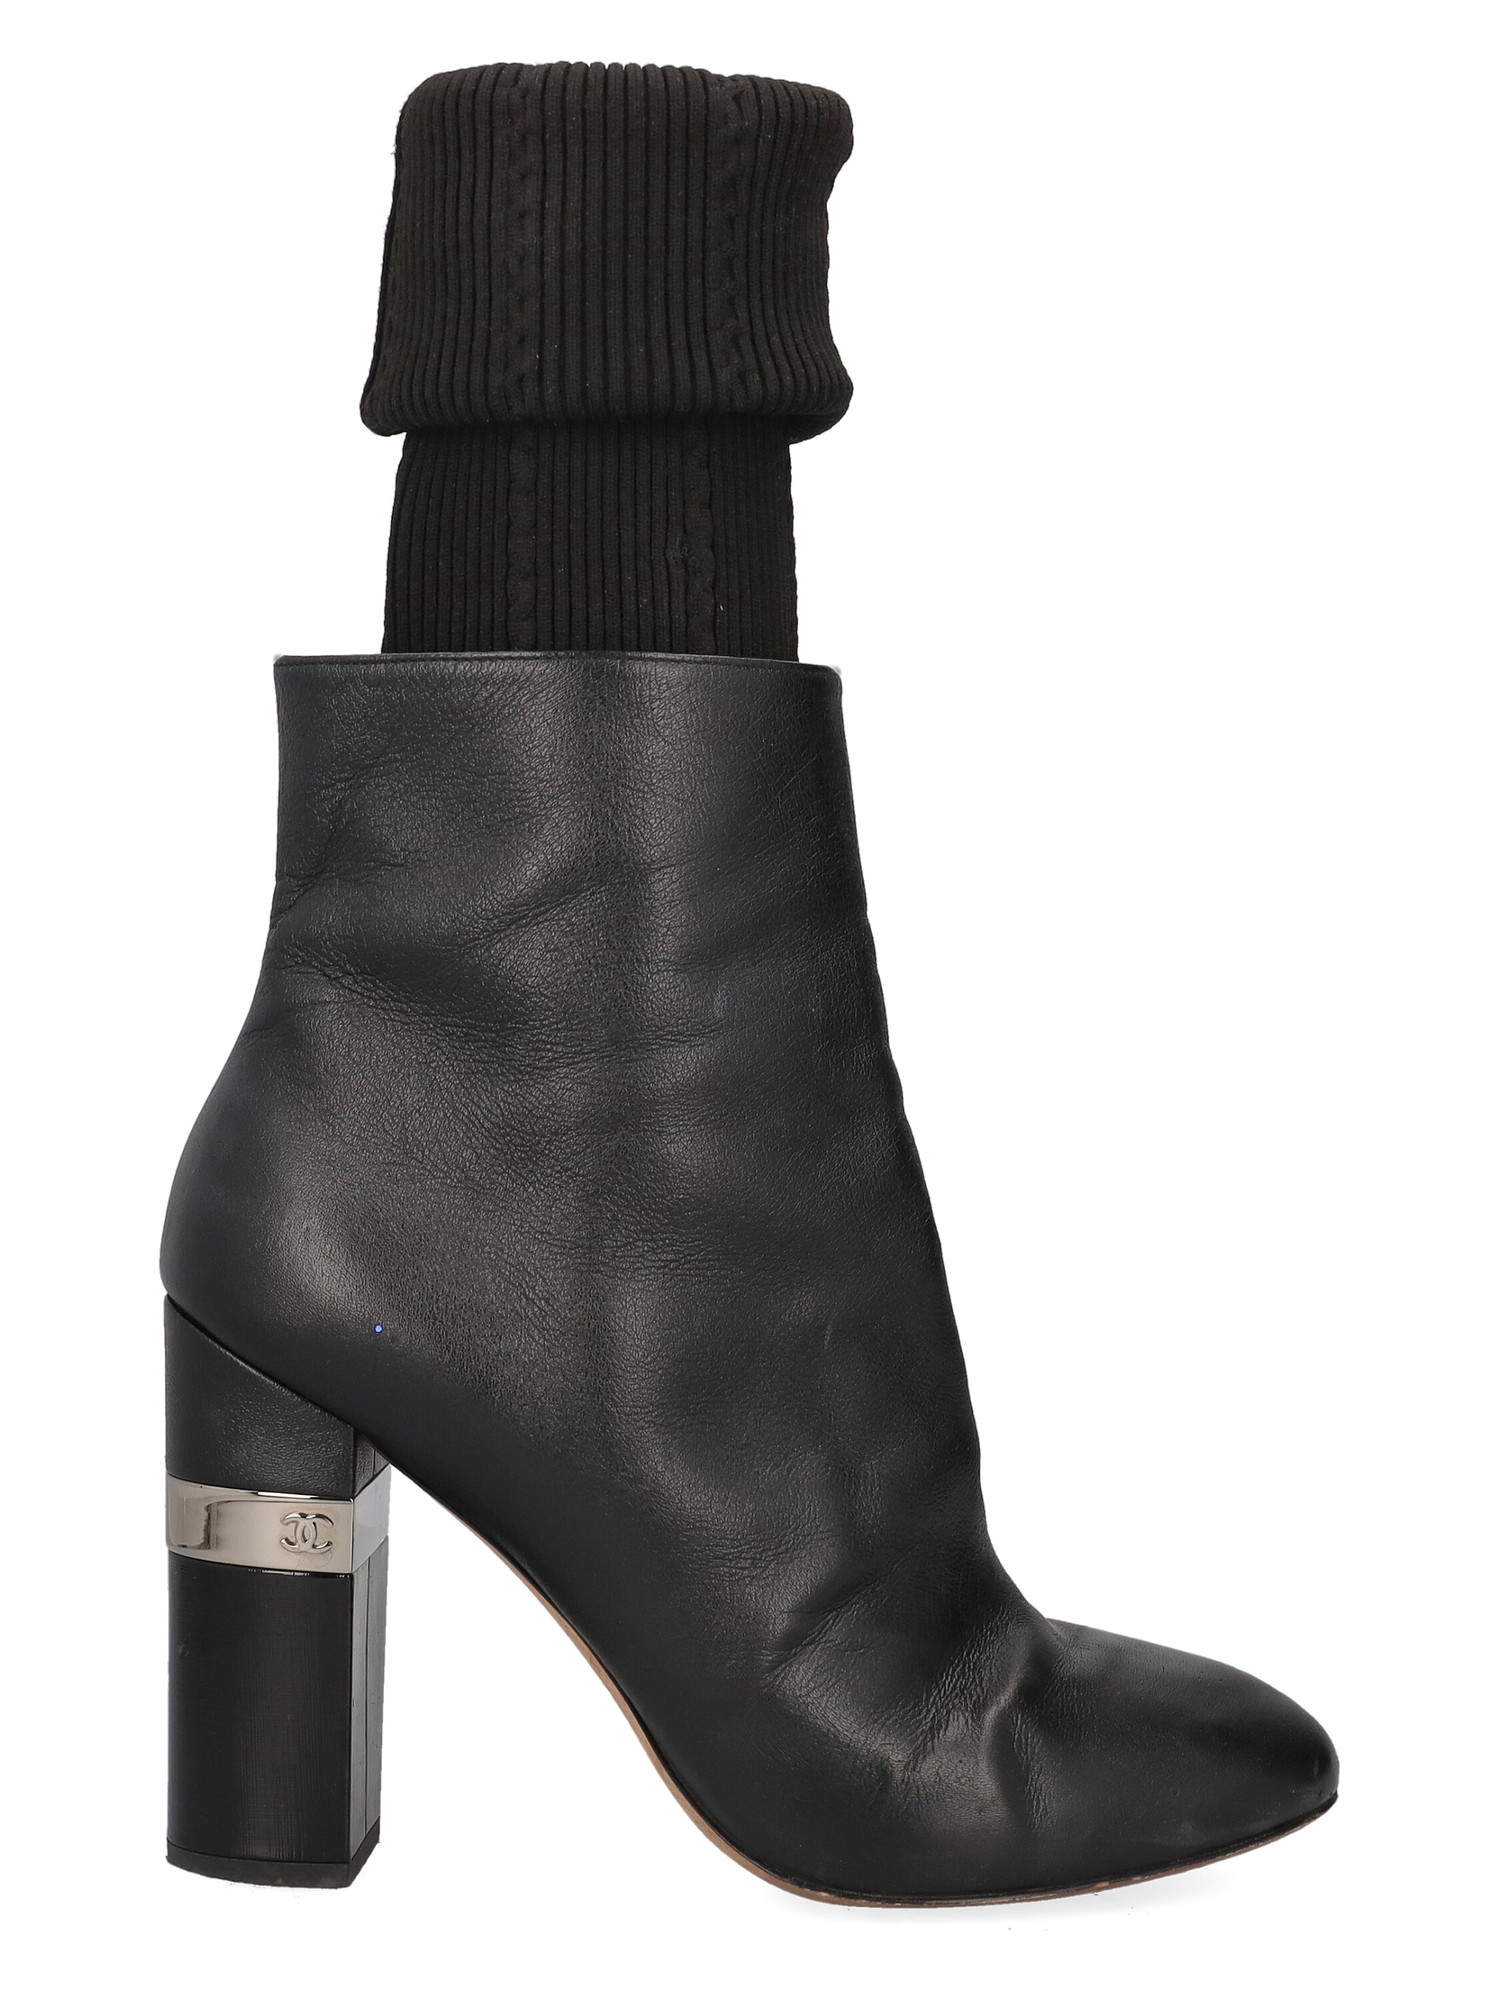 Bottines Pour Femme - Chanel - En Leather Black - Taille: IT 39.5 - EU 39.5